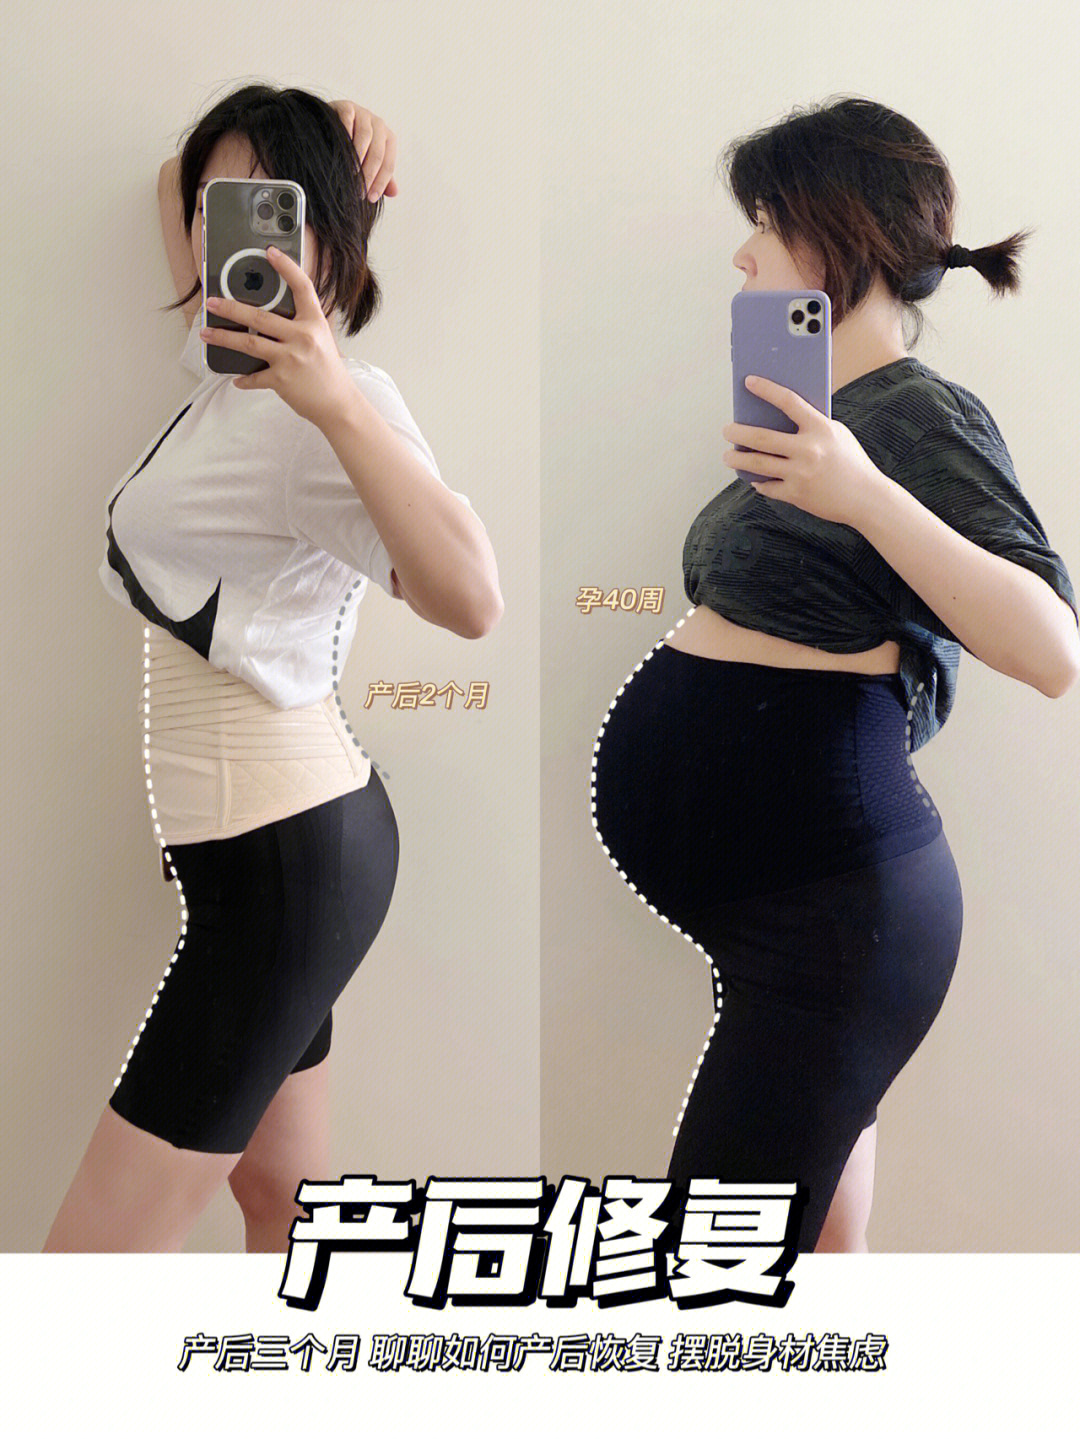 产后修复找对顺序方法三个月恢复孕前身材